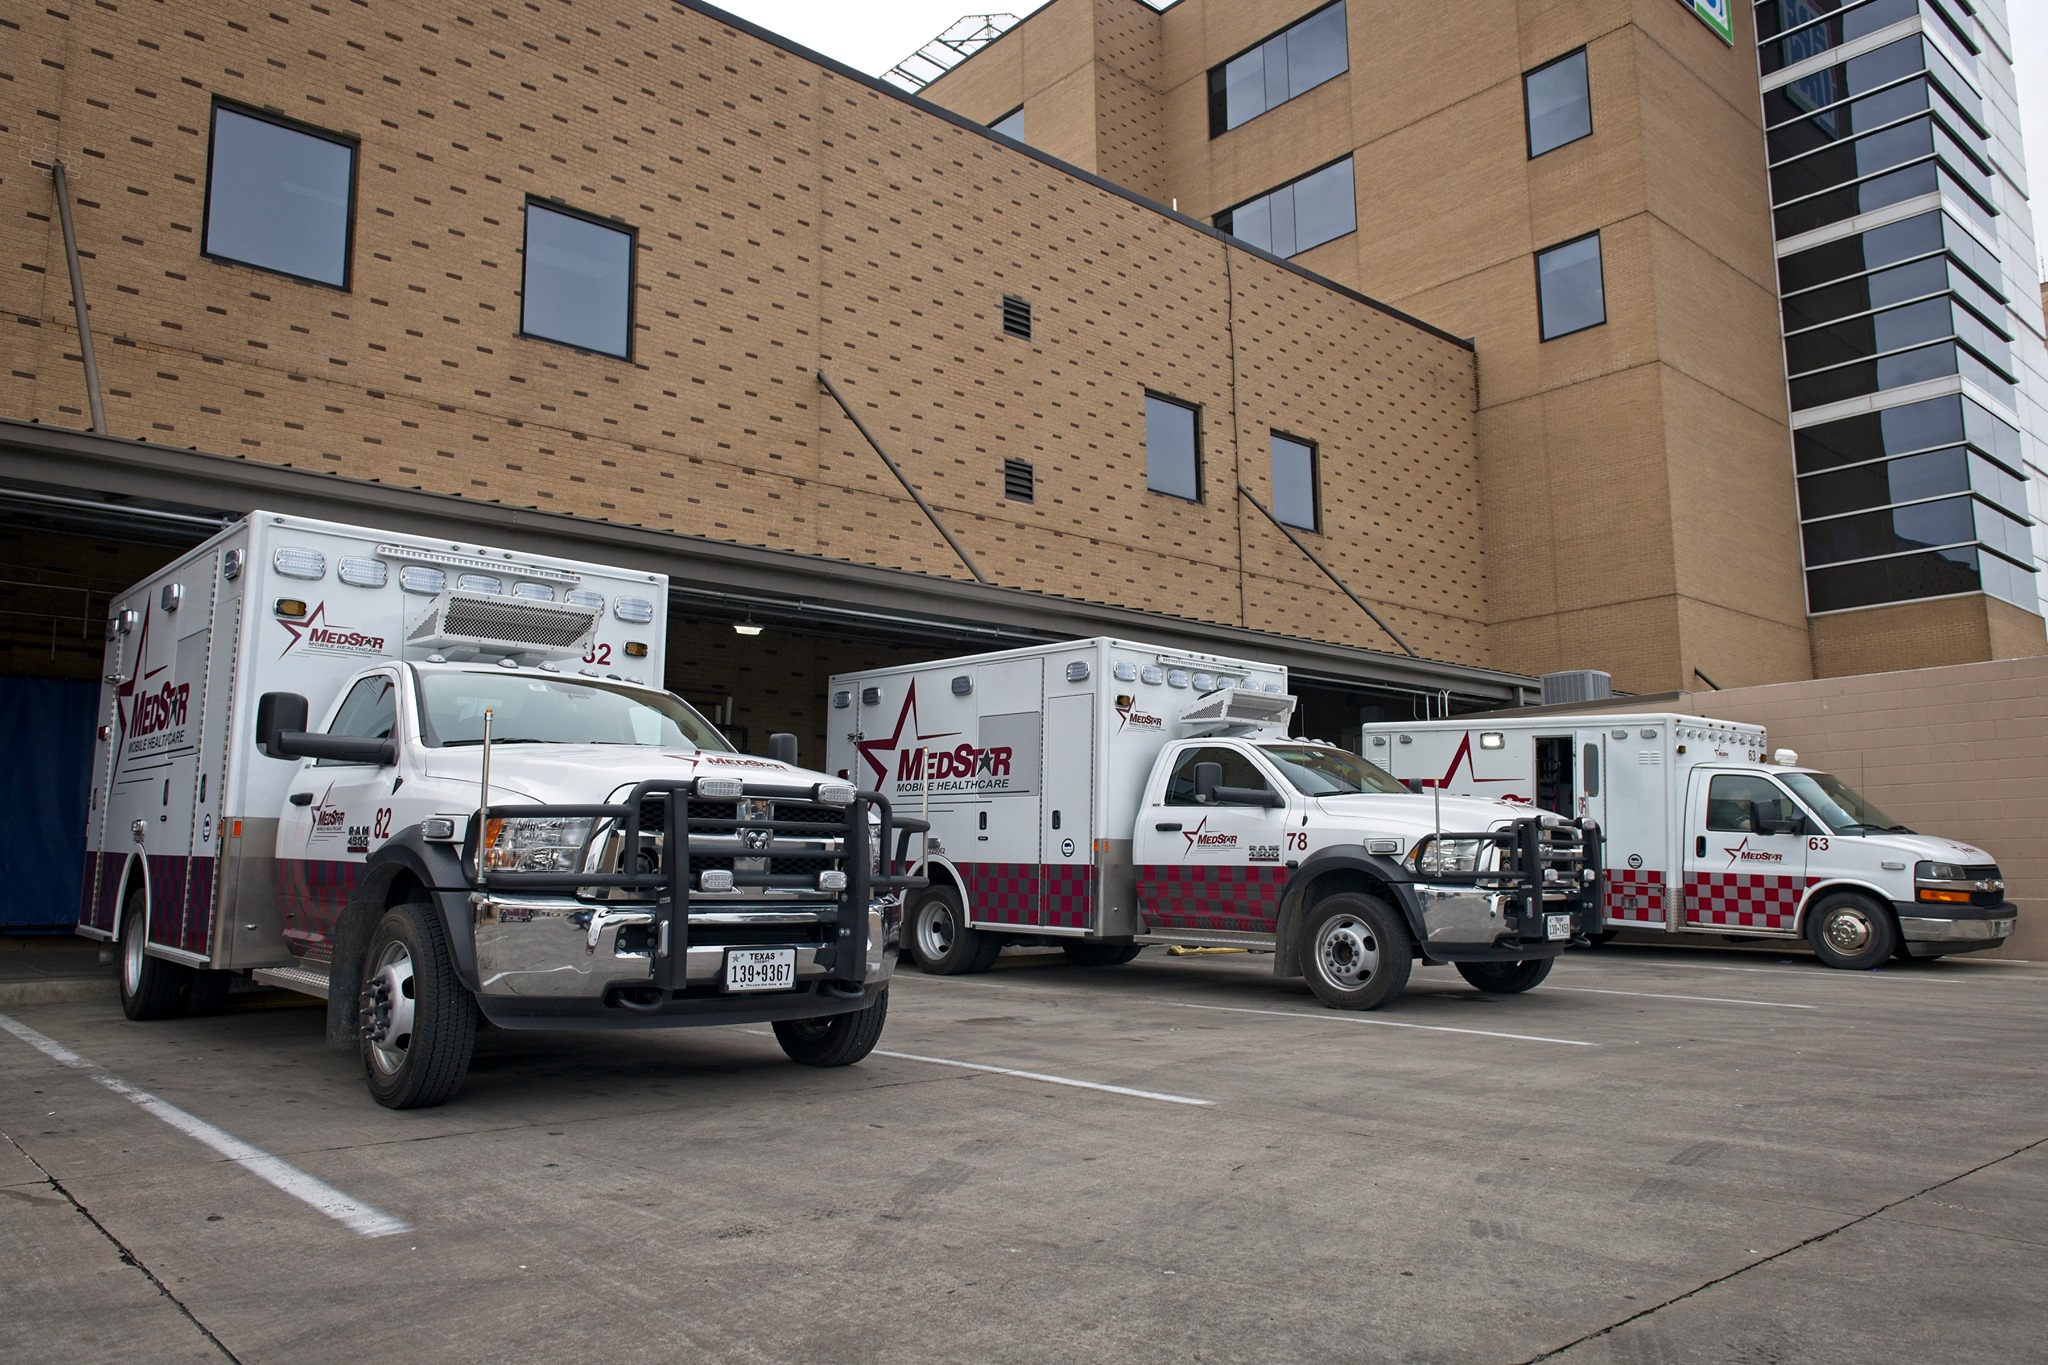 Community Release: MedStar to Limit Non-Patient Passengers on Ambulances